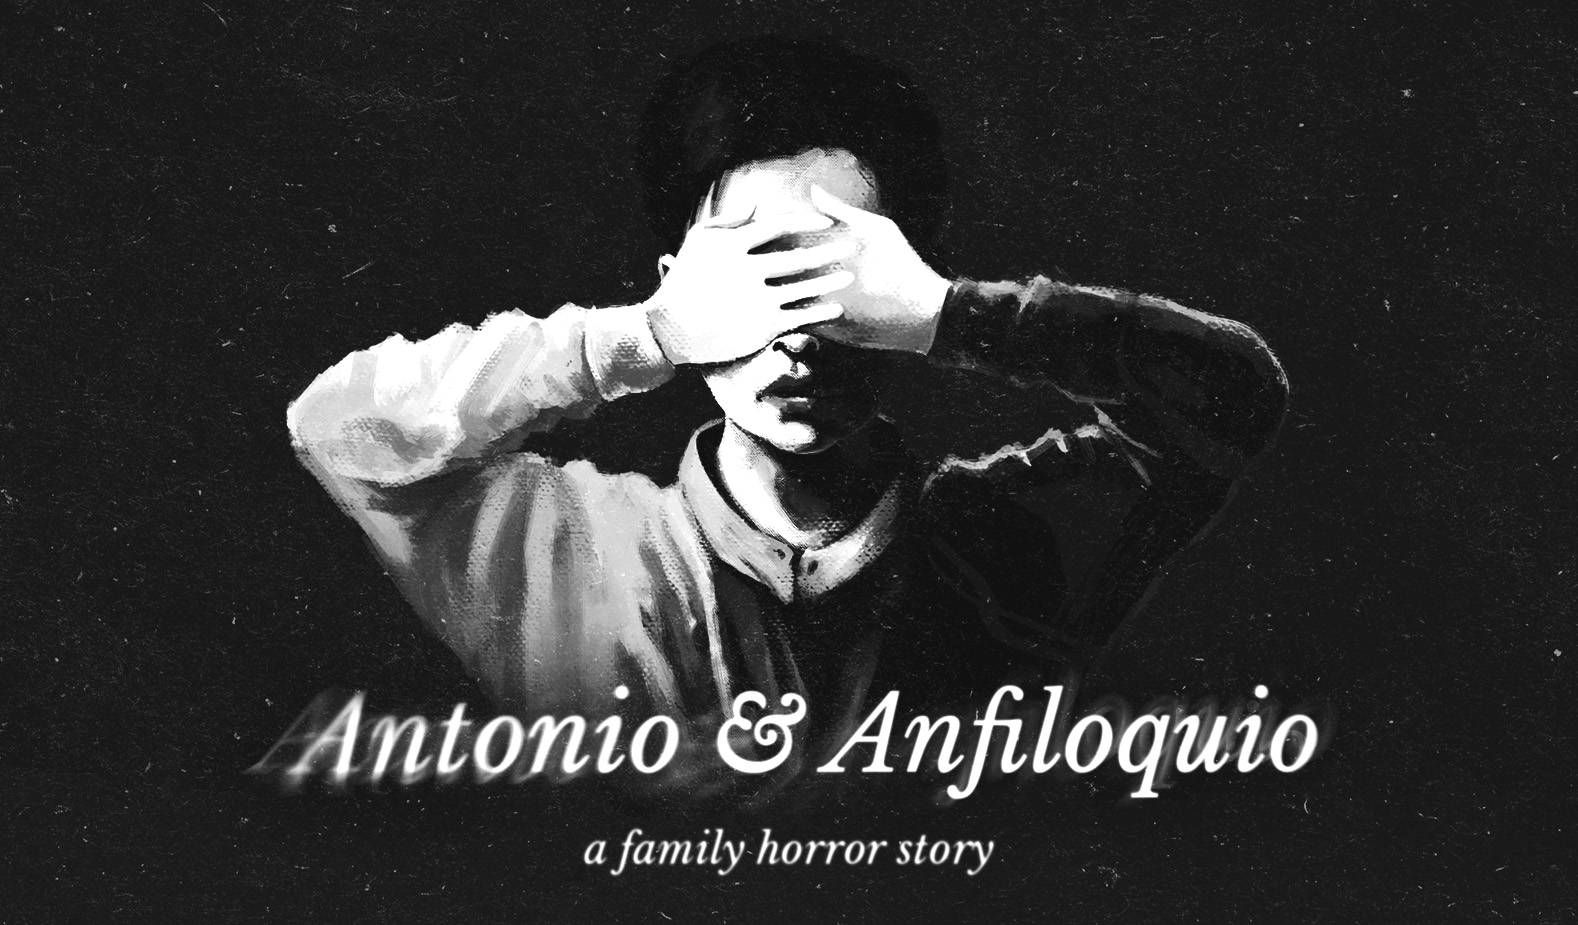 Antonio & Anfiloquio